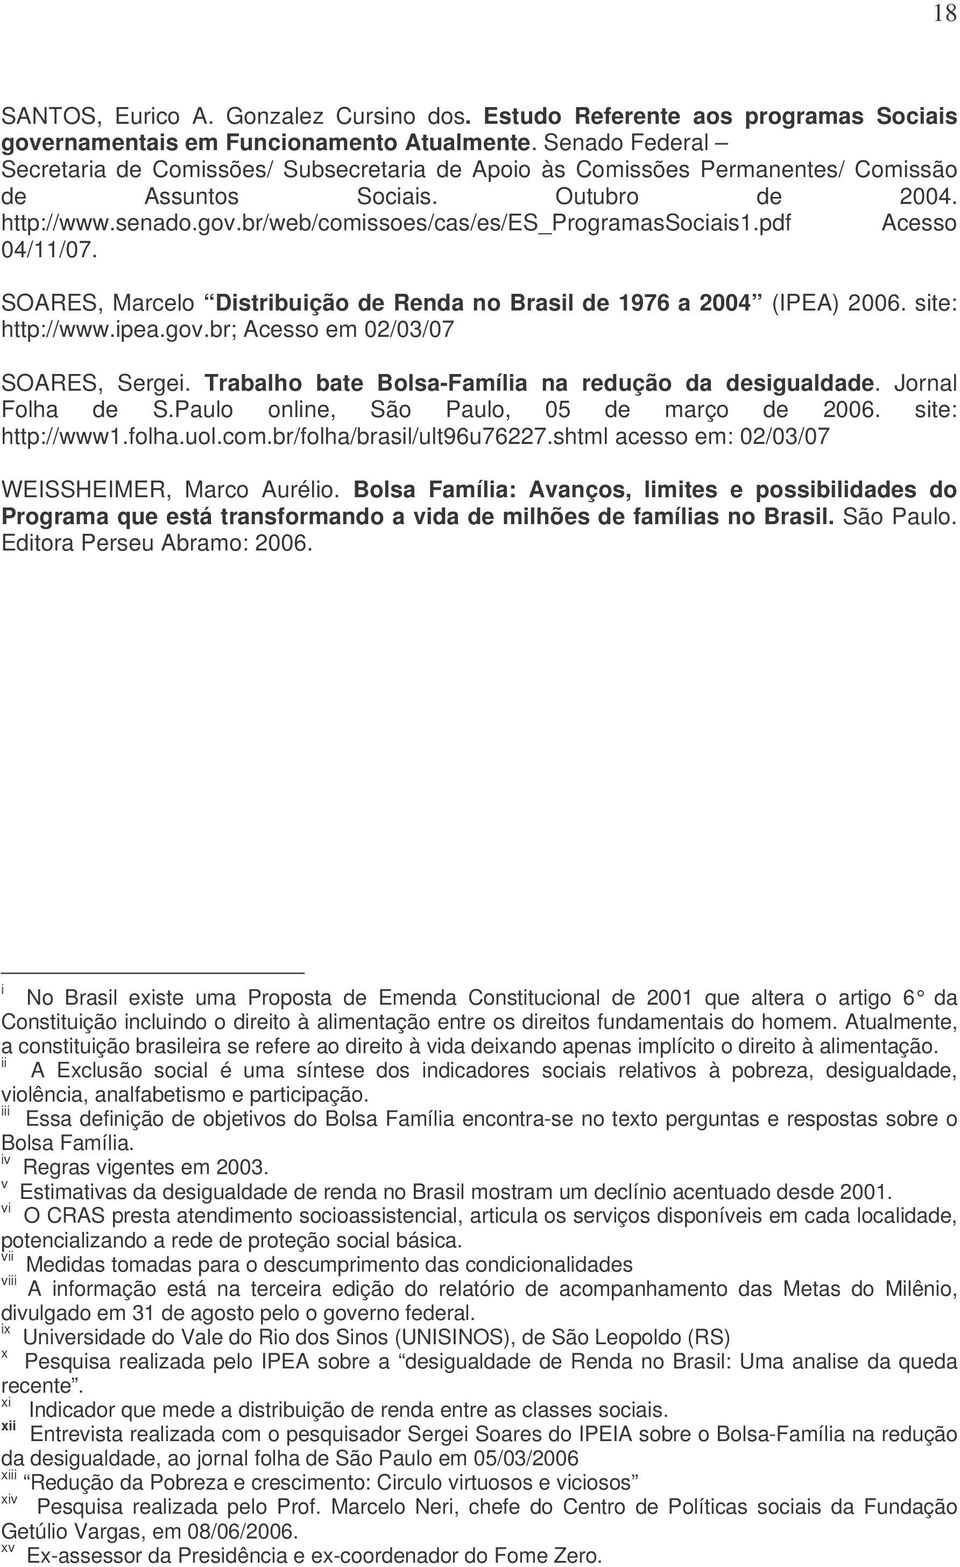 br/web/comissoes/cas/es/es_programassociais1.pdf Acesso 04/11/07. SOARES, Marcelo Distribuição de Renda no Brasil de 1976 a 2004 (IPEA) 2006. site: http://www.ipea.gov.